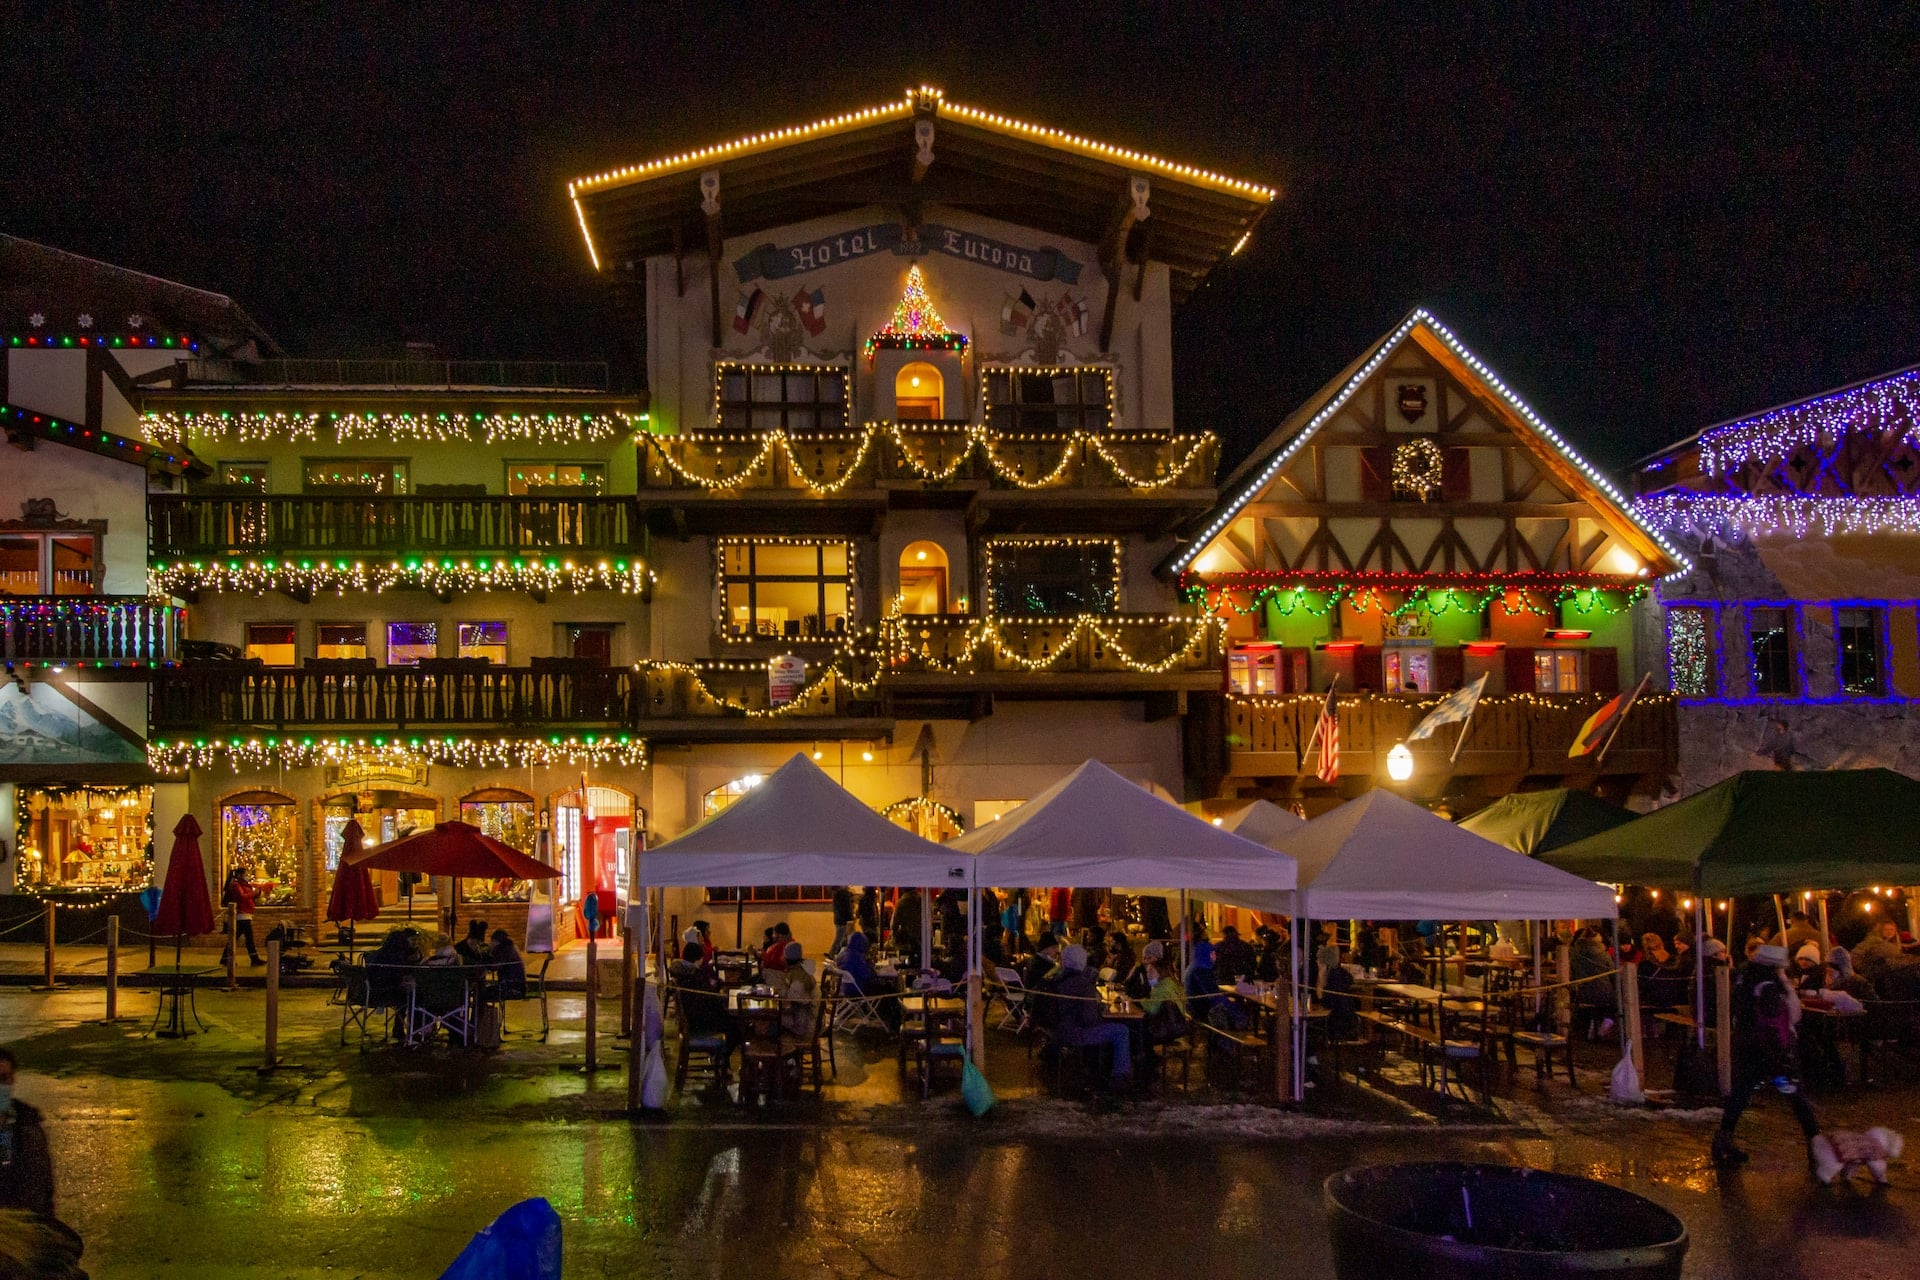 Leavenworth Christmas Market